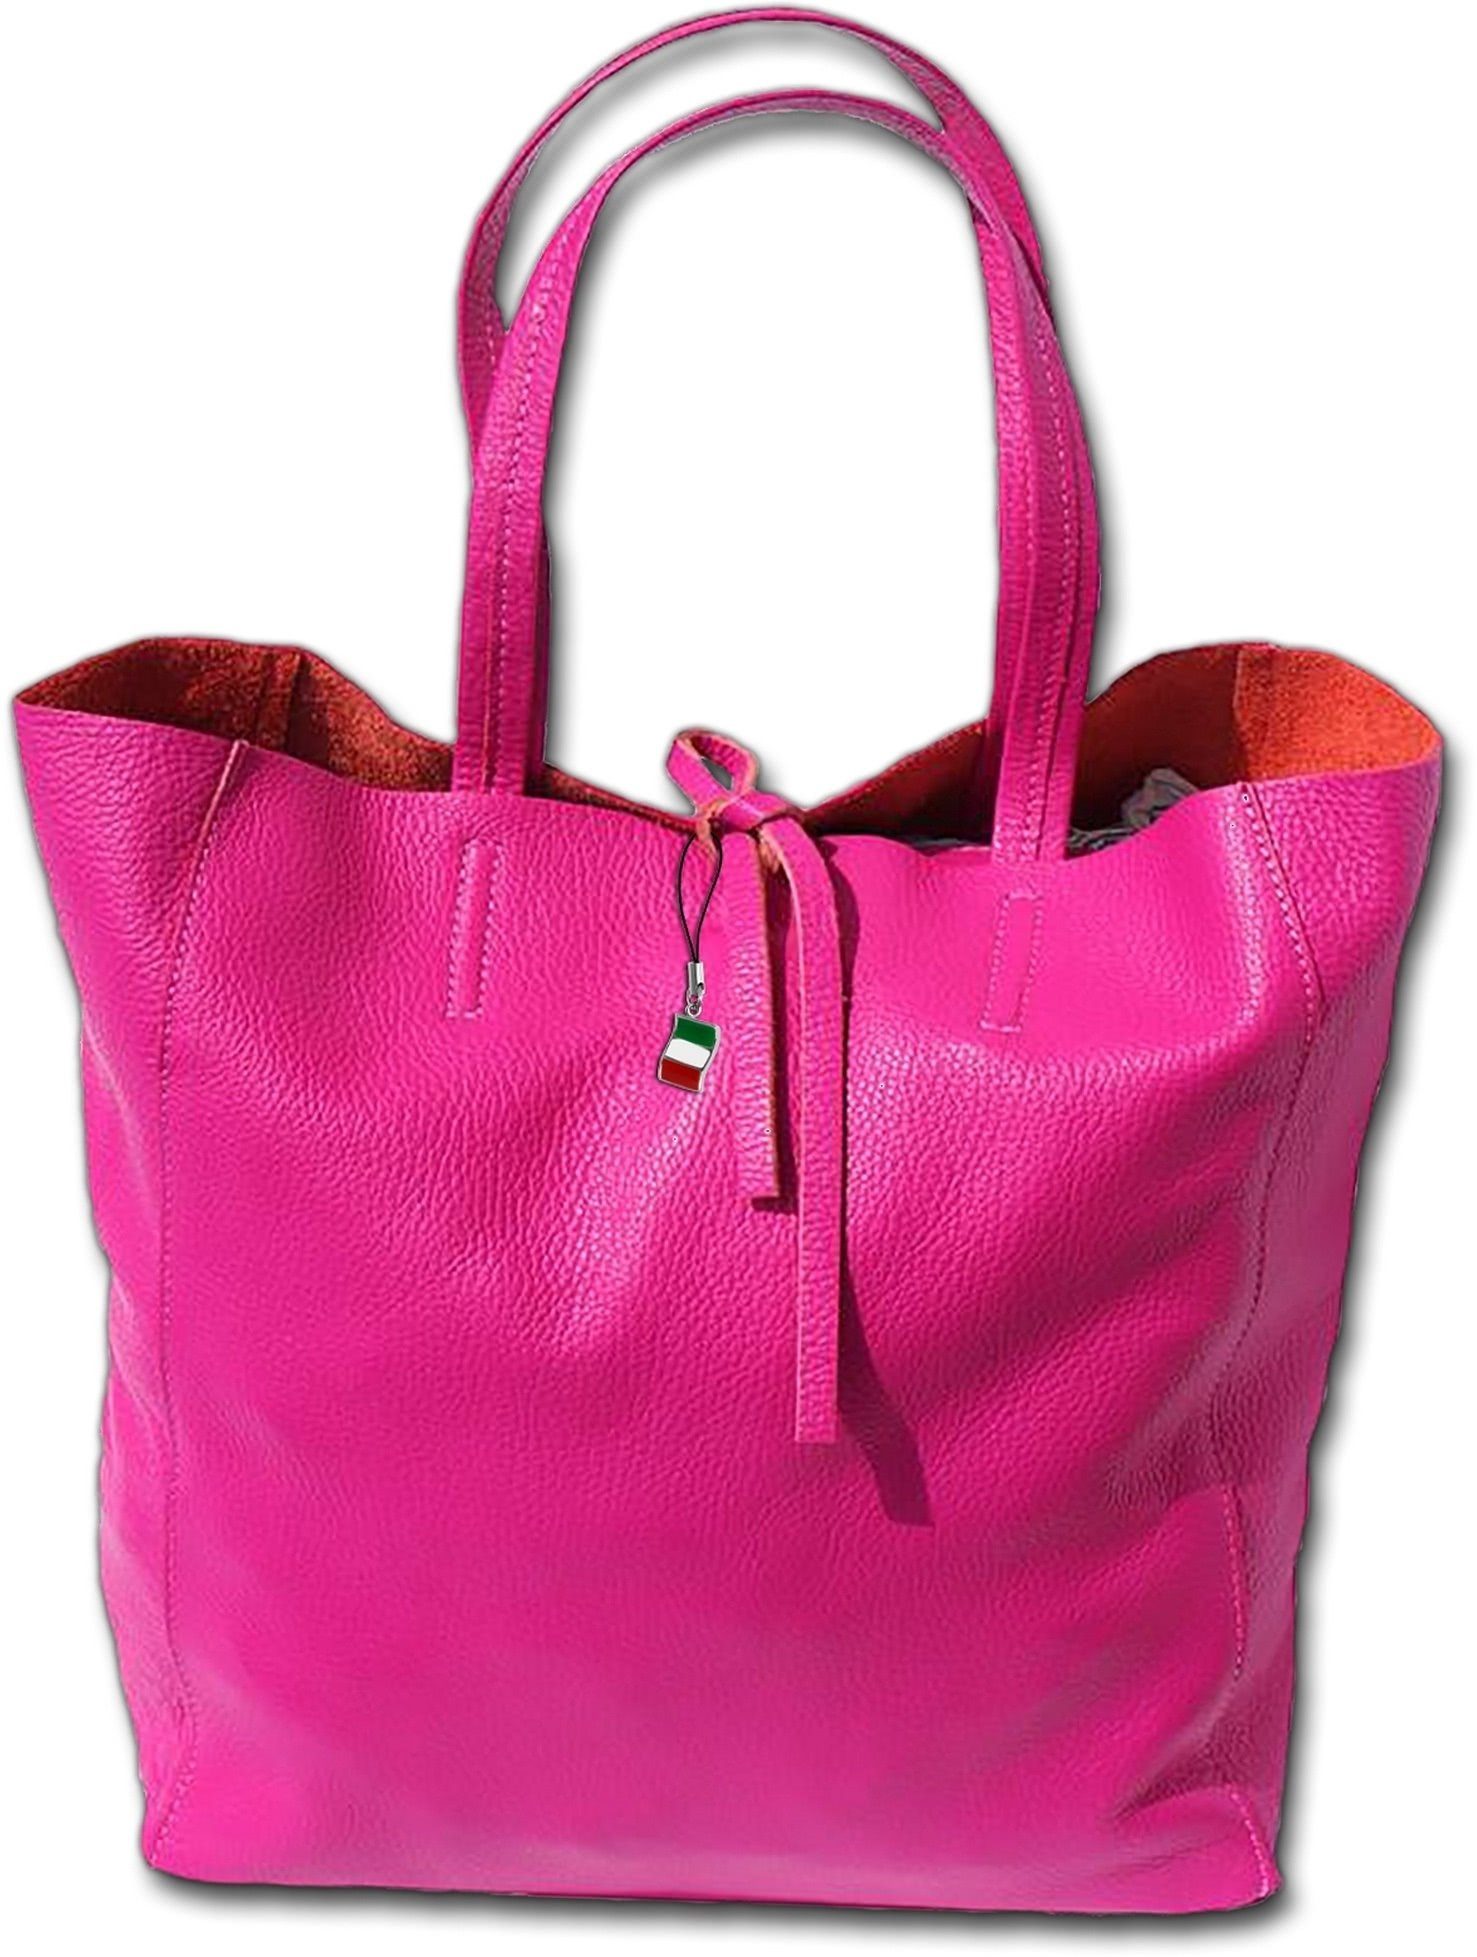 FLORENCE Shopper Florence Echtleder Schultertasche pink (Schultertasche,  Schultertasche), Damen Tasche Echtleder, Rindsleder pink, Made-In Italy